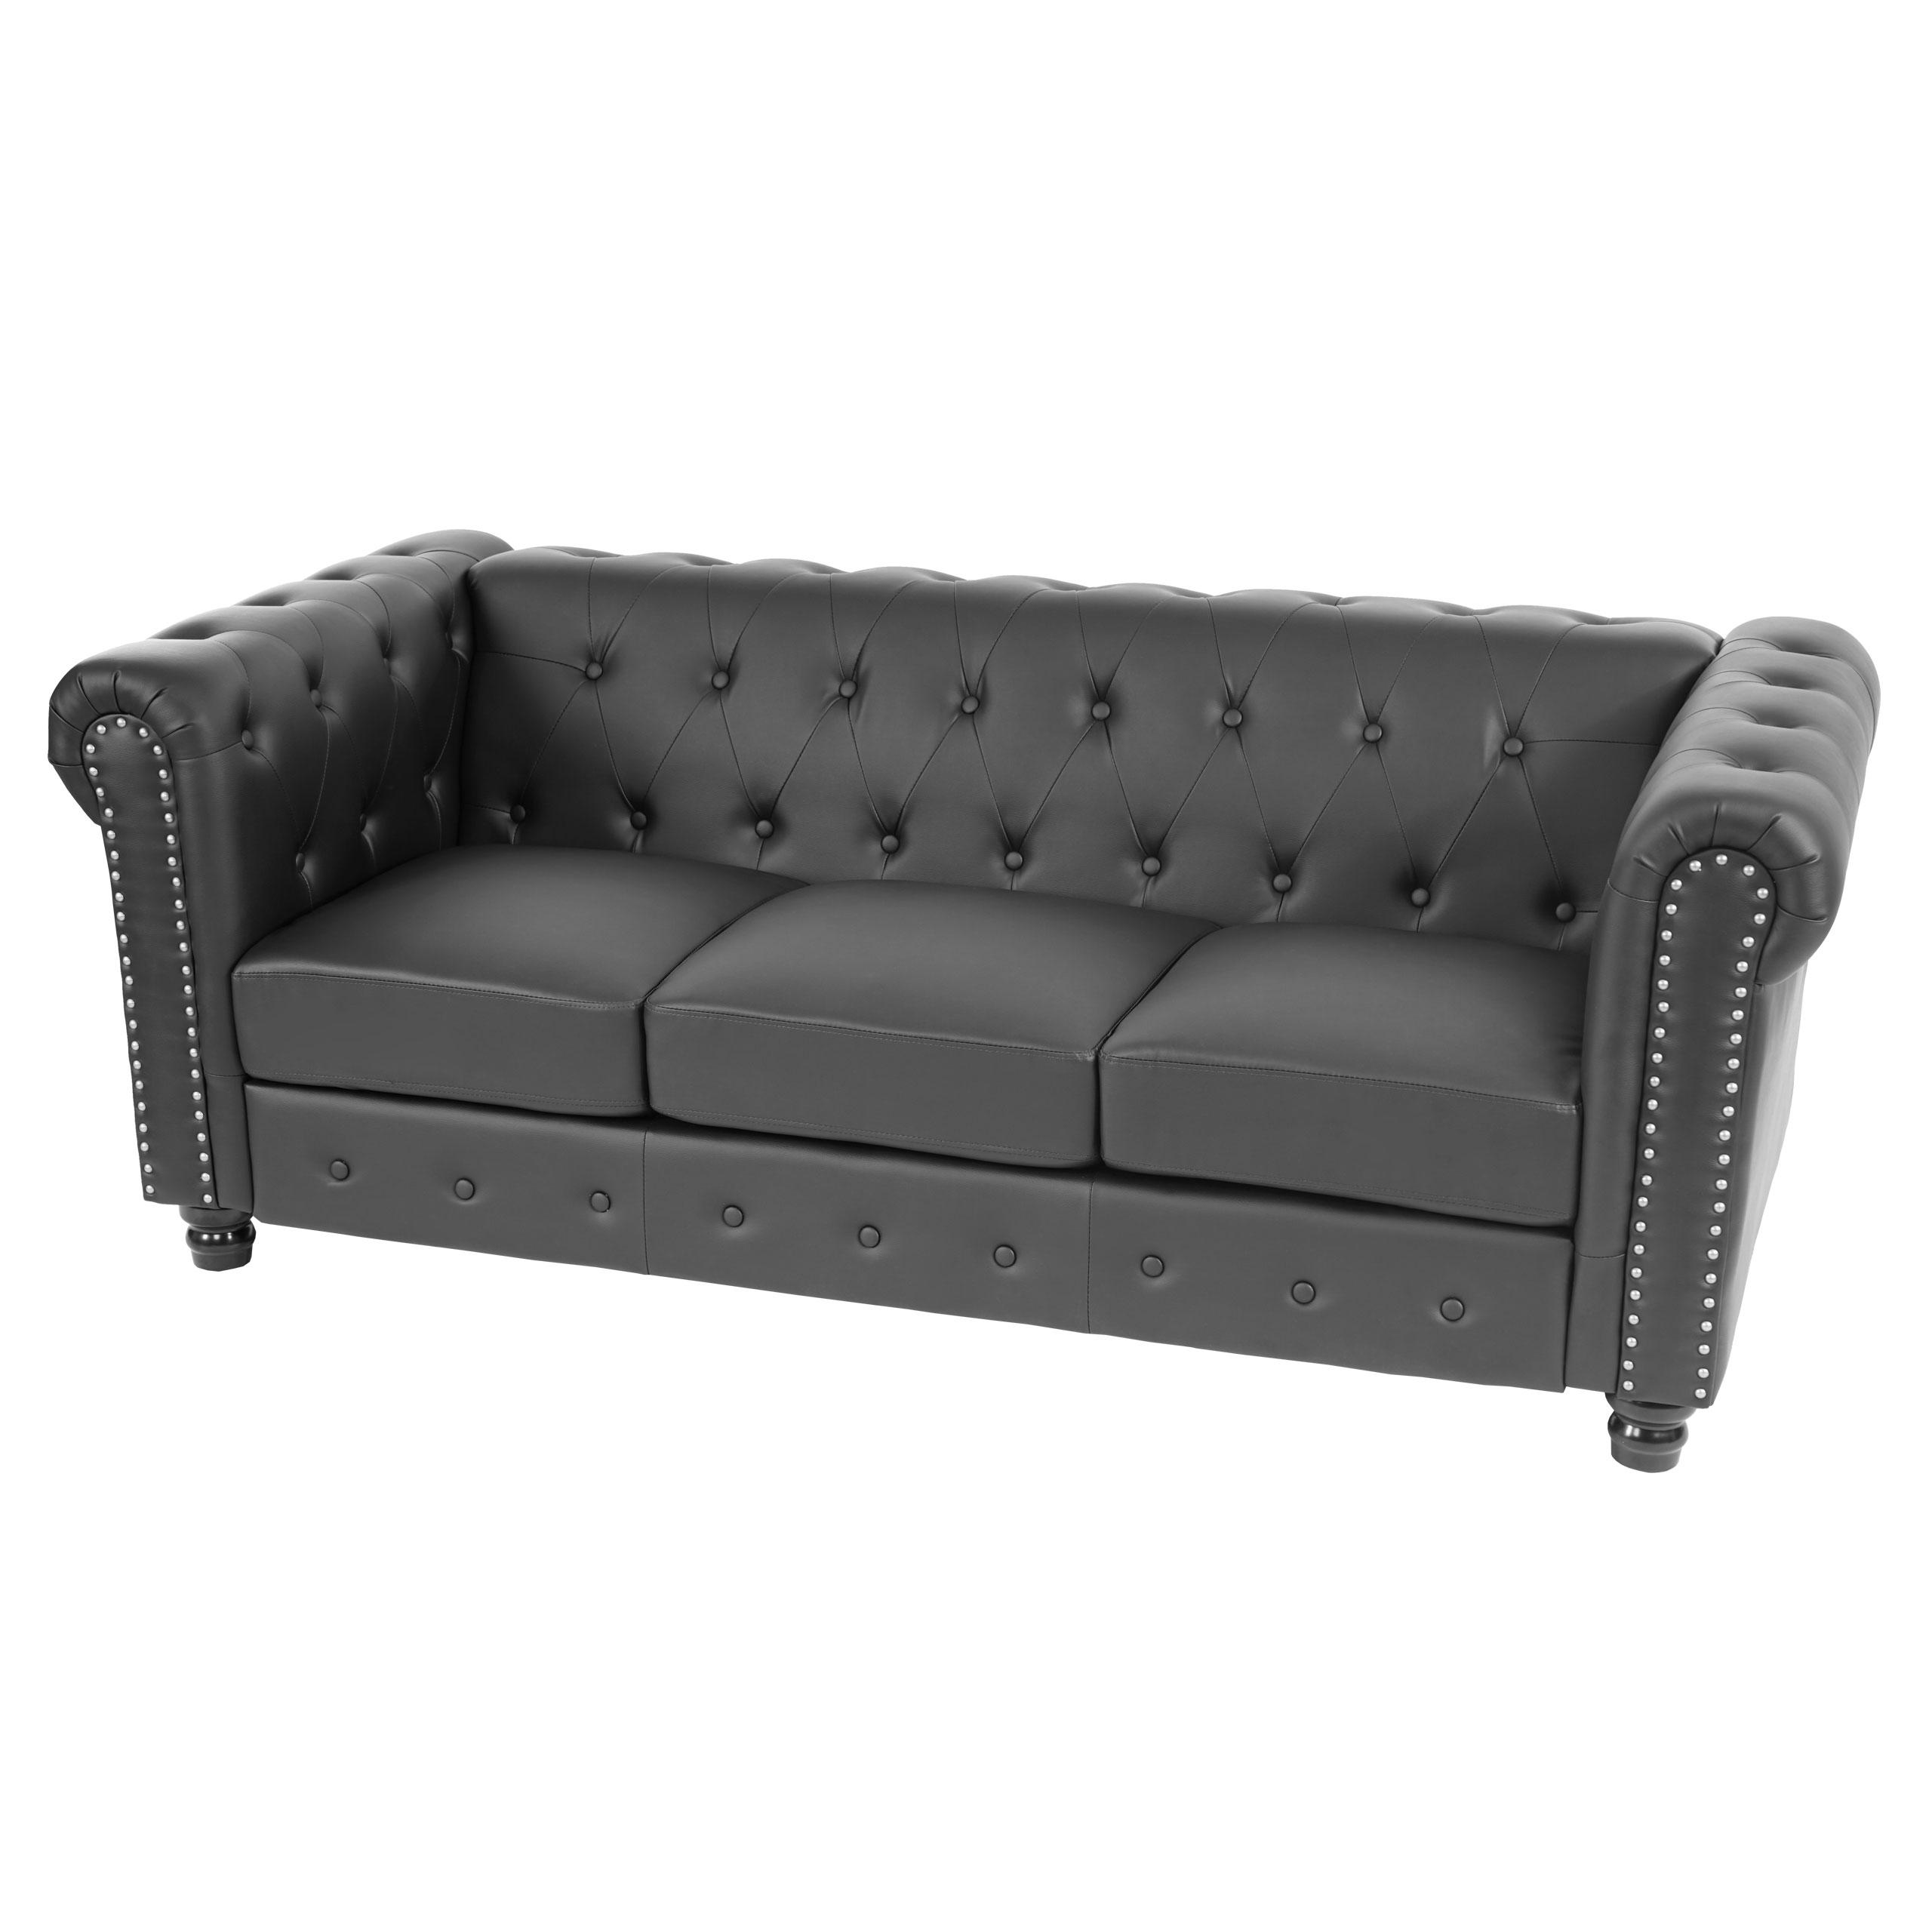 Sofá de 3 Plazas CHESTER, Diseño Clásico y Elegante, En Piel, Patas Redondeadas, Color Negro